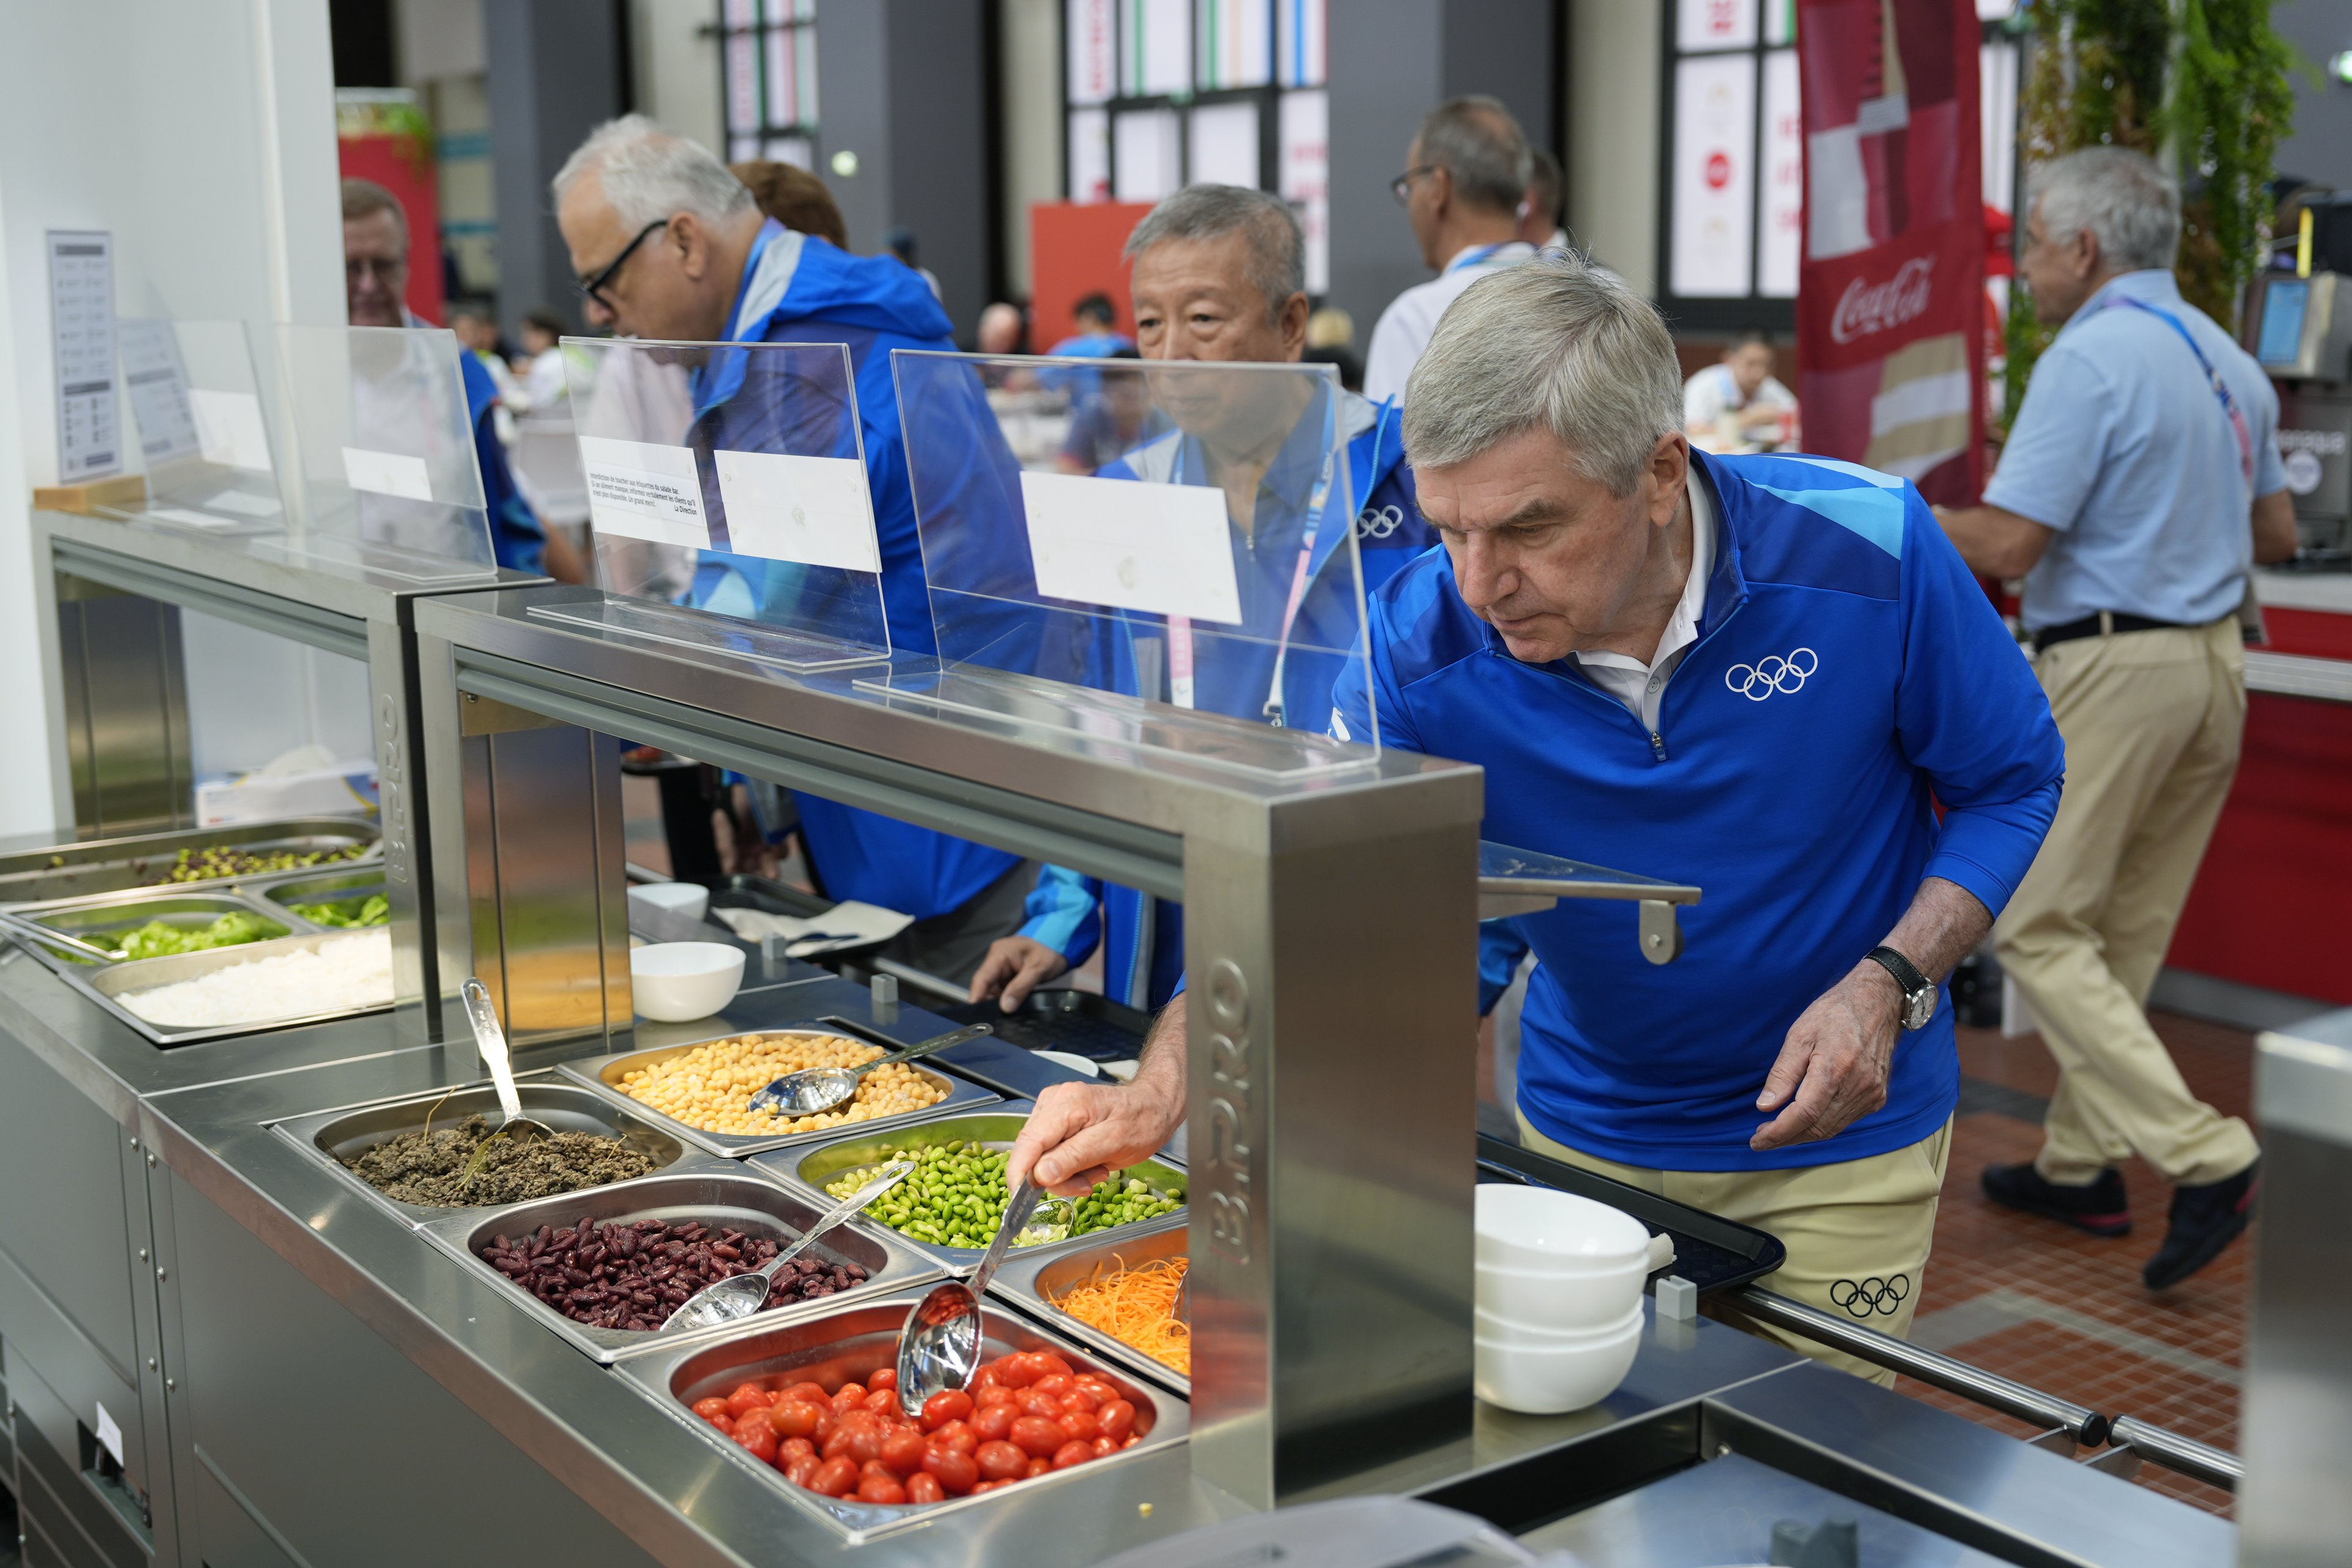 O presidente do COI, Thomas Bach, experimenta comida de um bufê de saladas enquanto visita a Vila Olímpica antes do início dos Jogos Olímpicos de Paris 2024